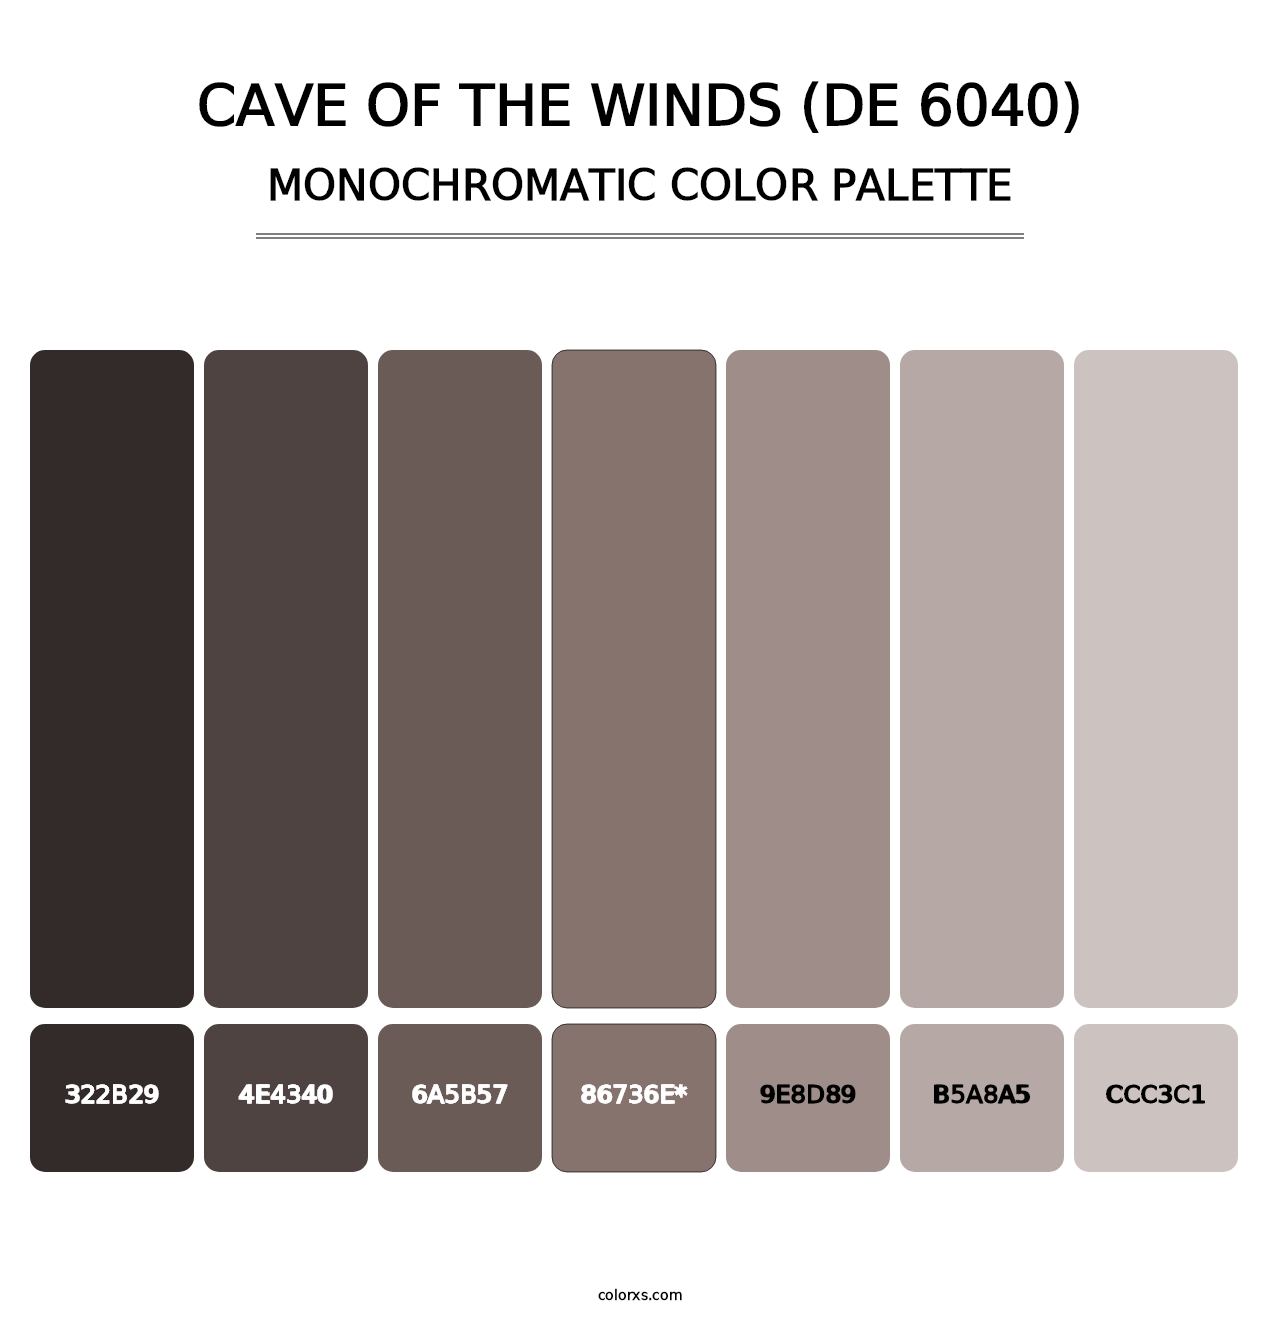 Cave of the Winds (DE 6040) - Monochromatic Color Palette